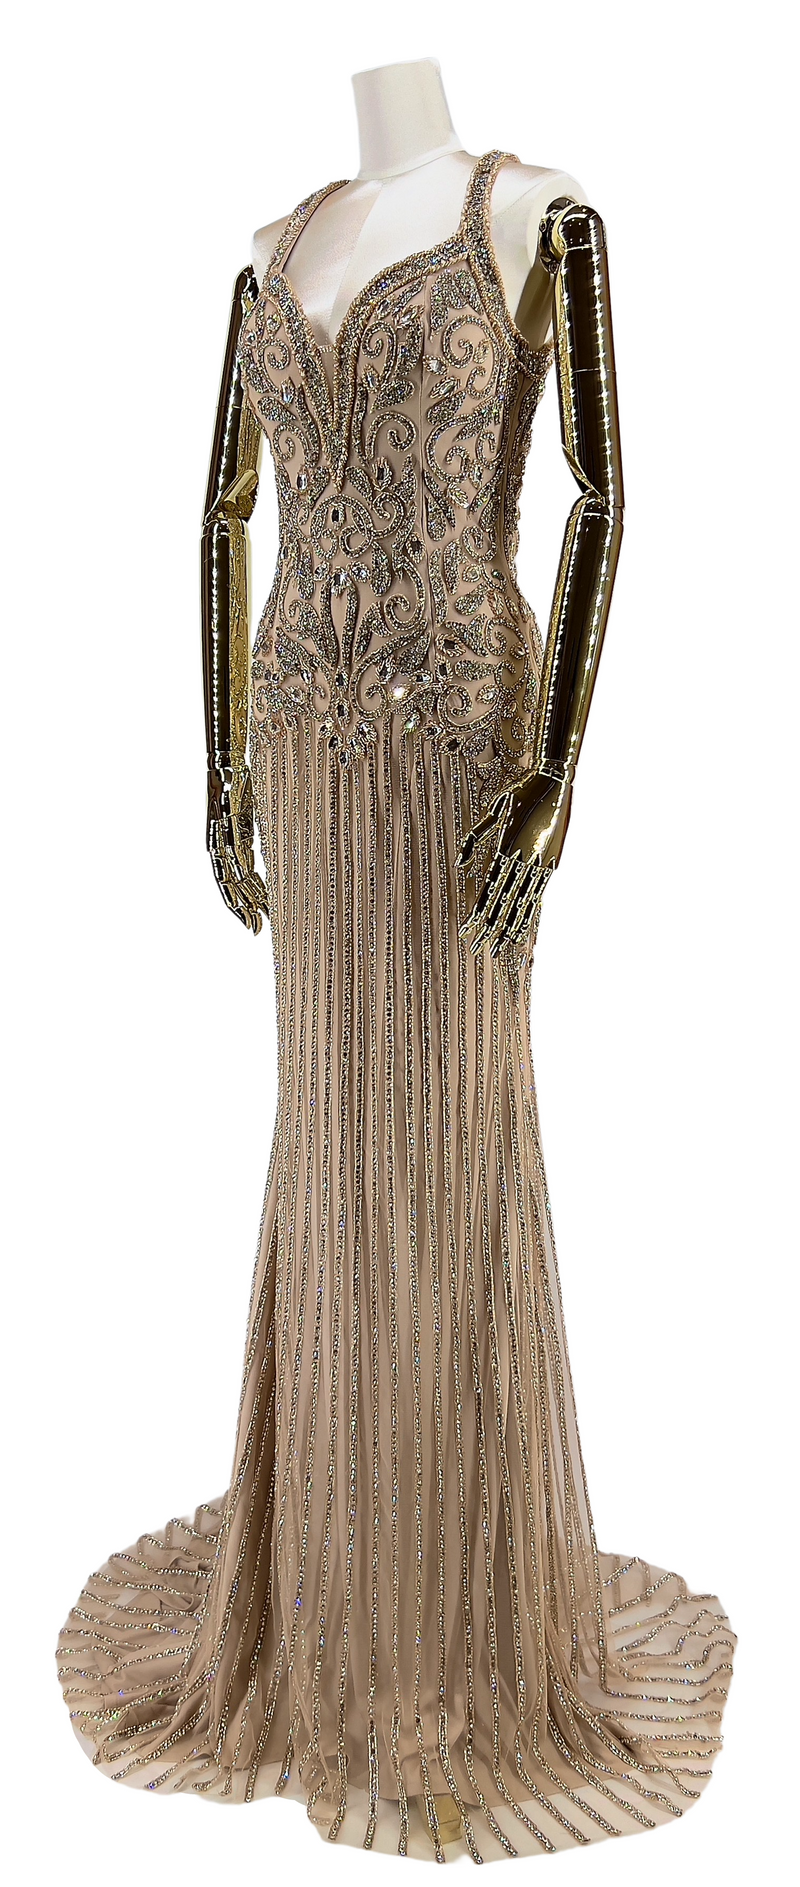 Vinklet visning af Diamantdråbe Elegance Gallakjole, fremviser kjolens sofistikerede snit og glimtende detaljer, der afspejler ekstravagance og stil.